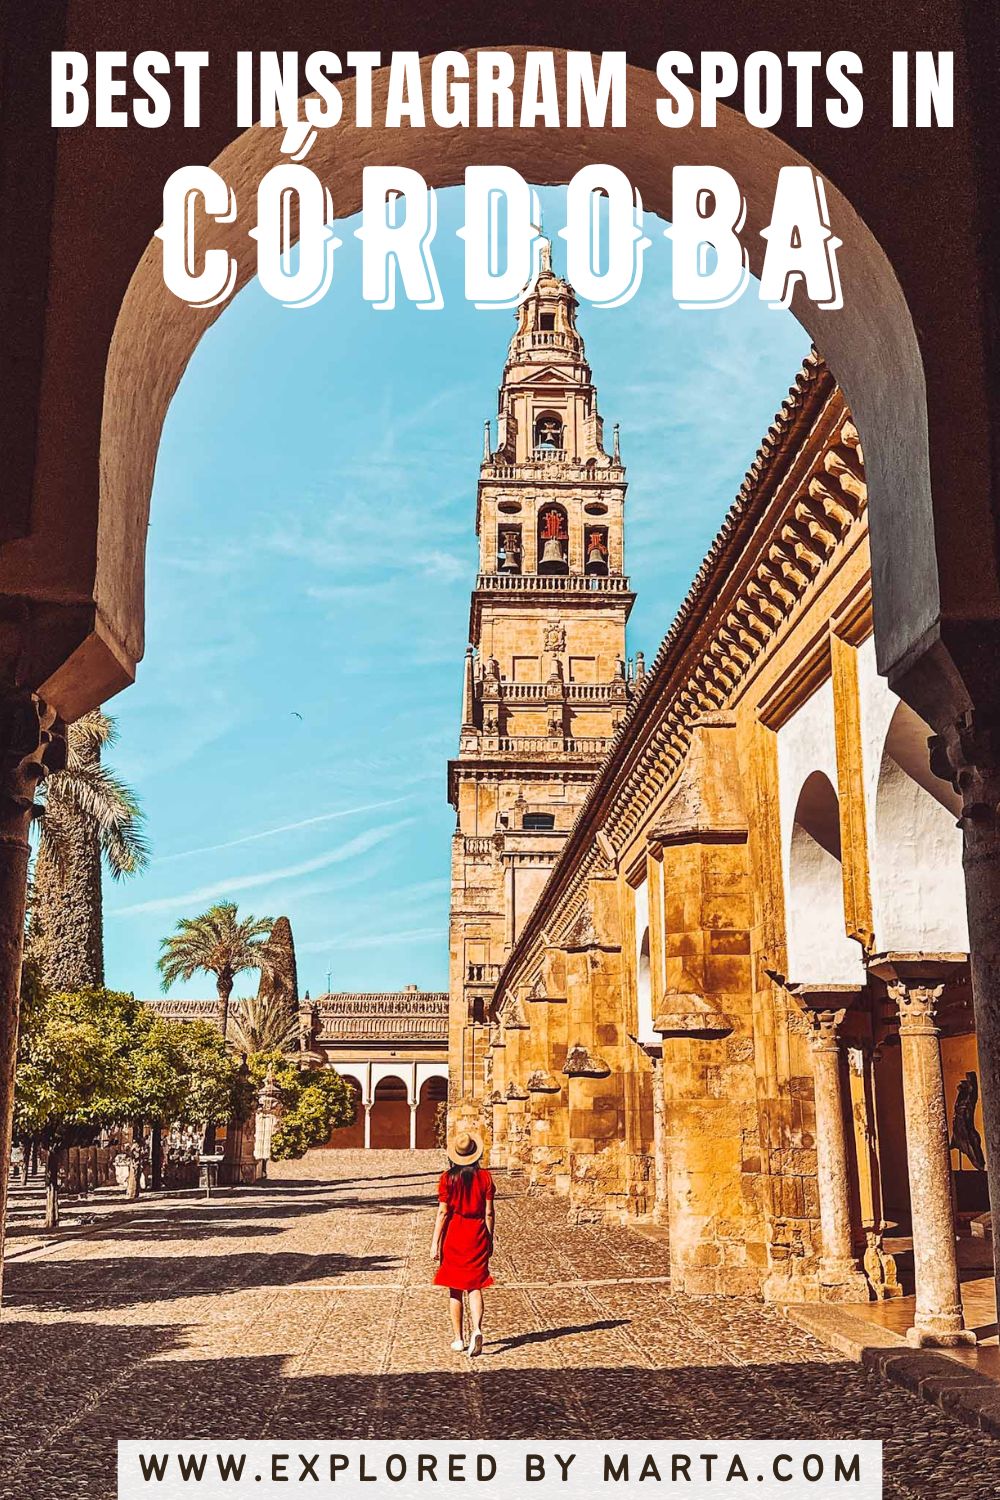 Córdoba, Spain - most famous Instagram spots